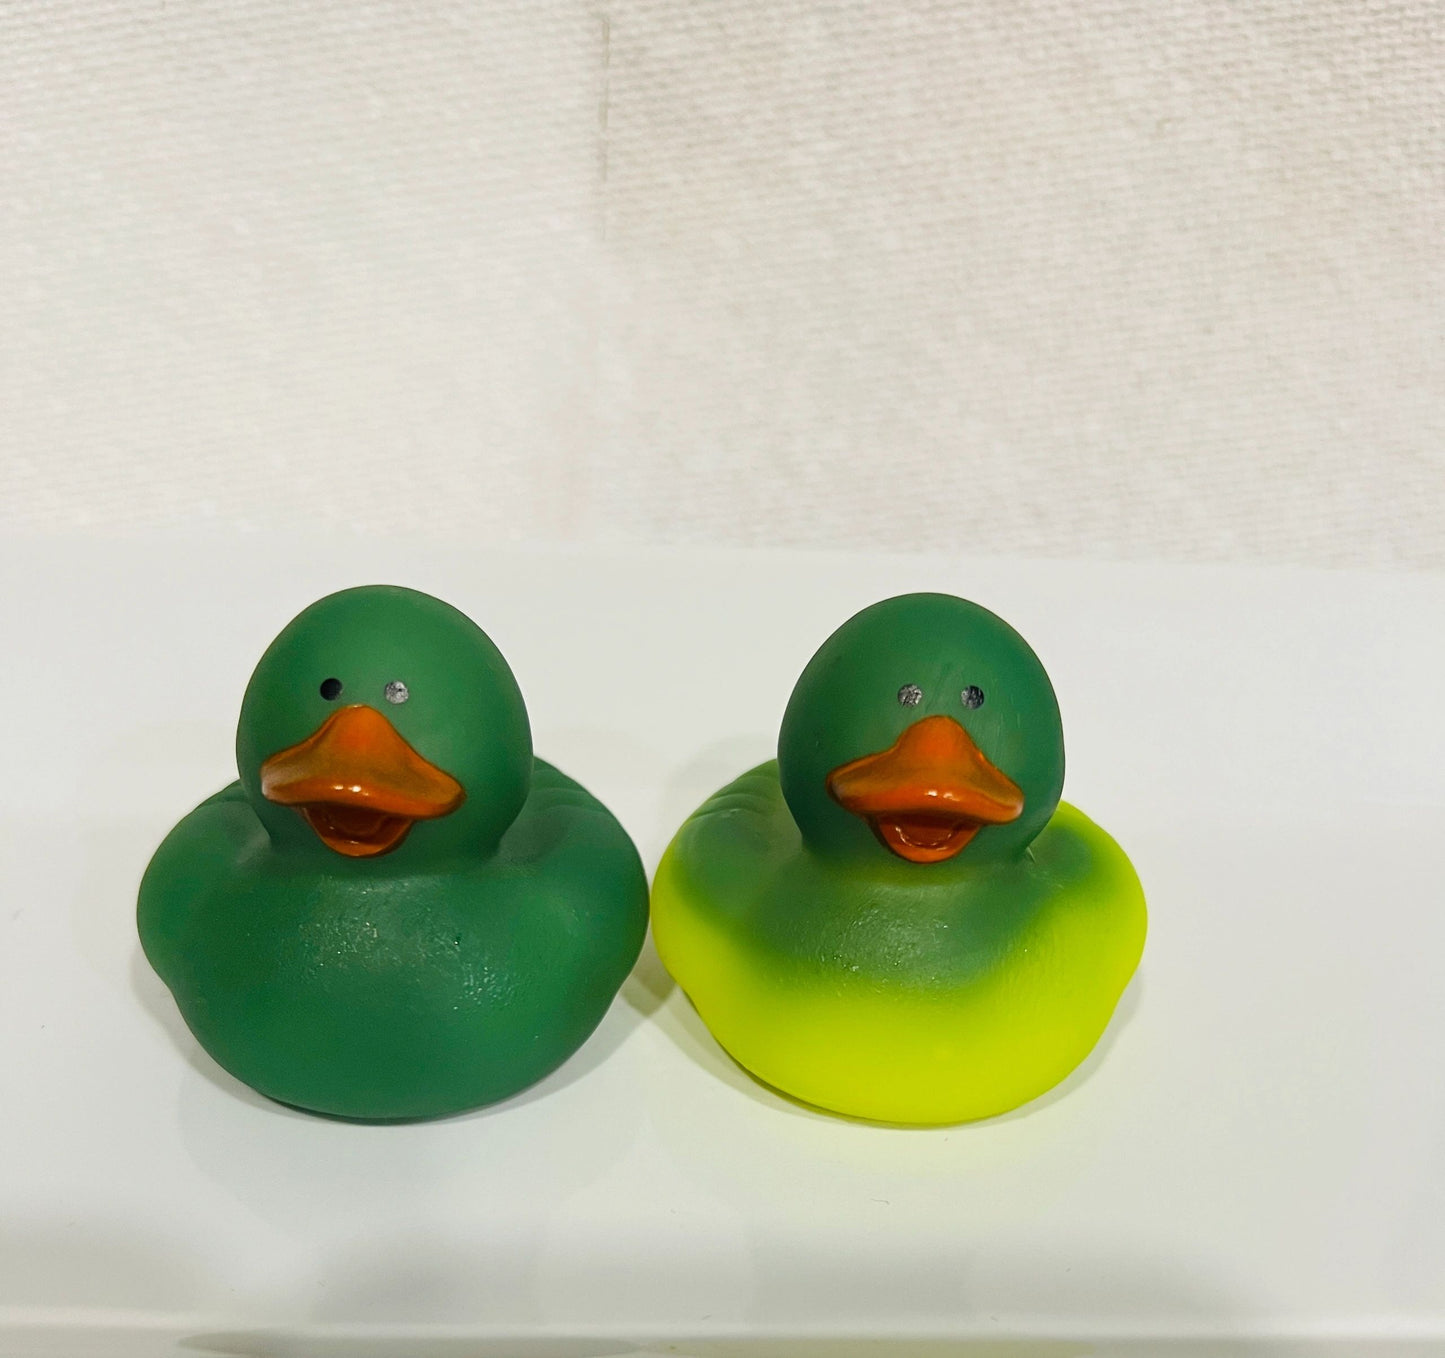 Color Change Rubber Duck